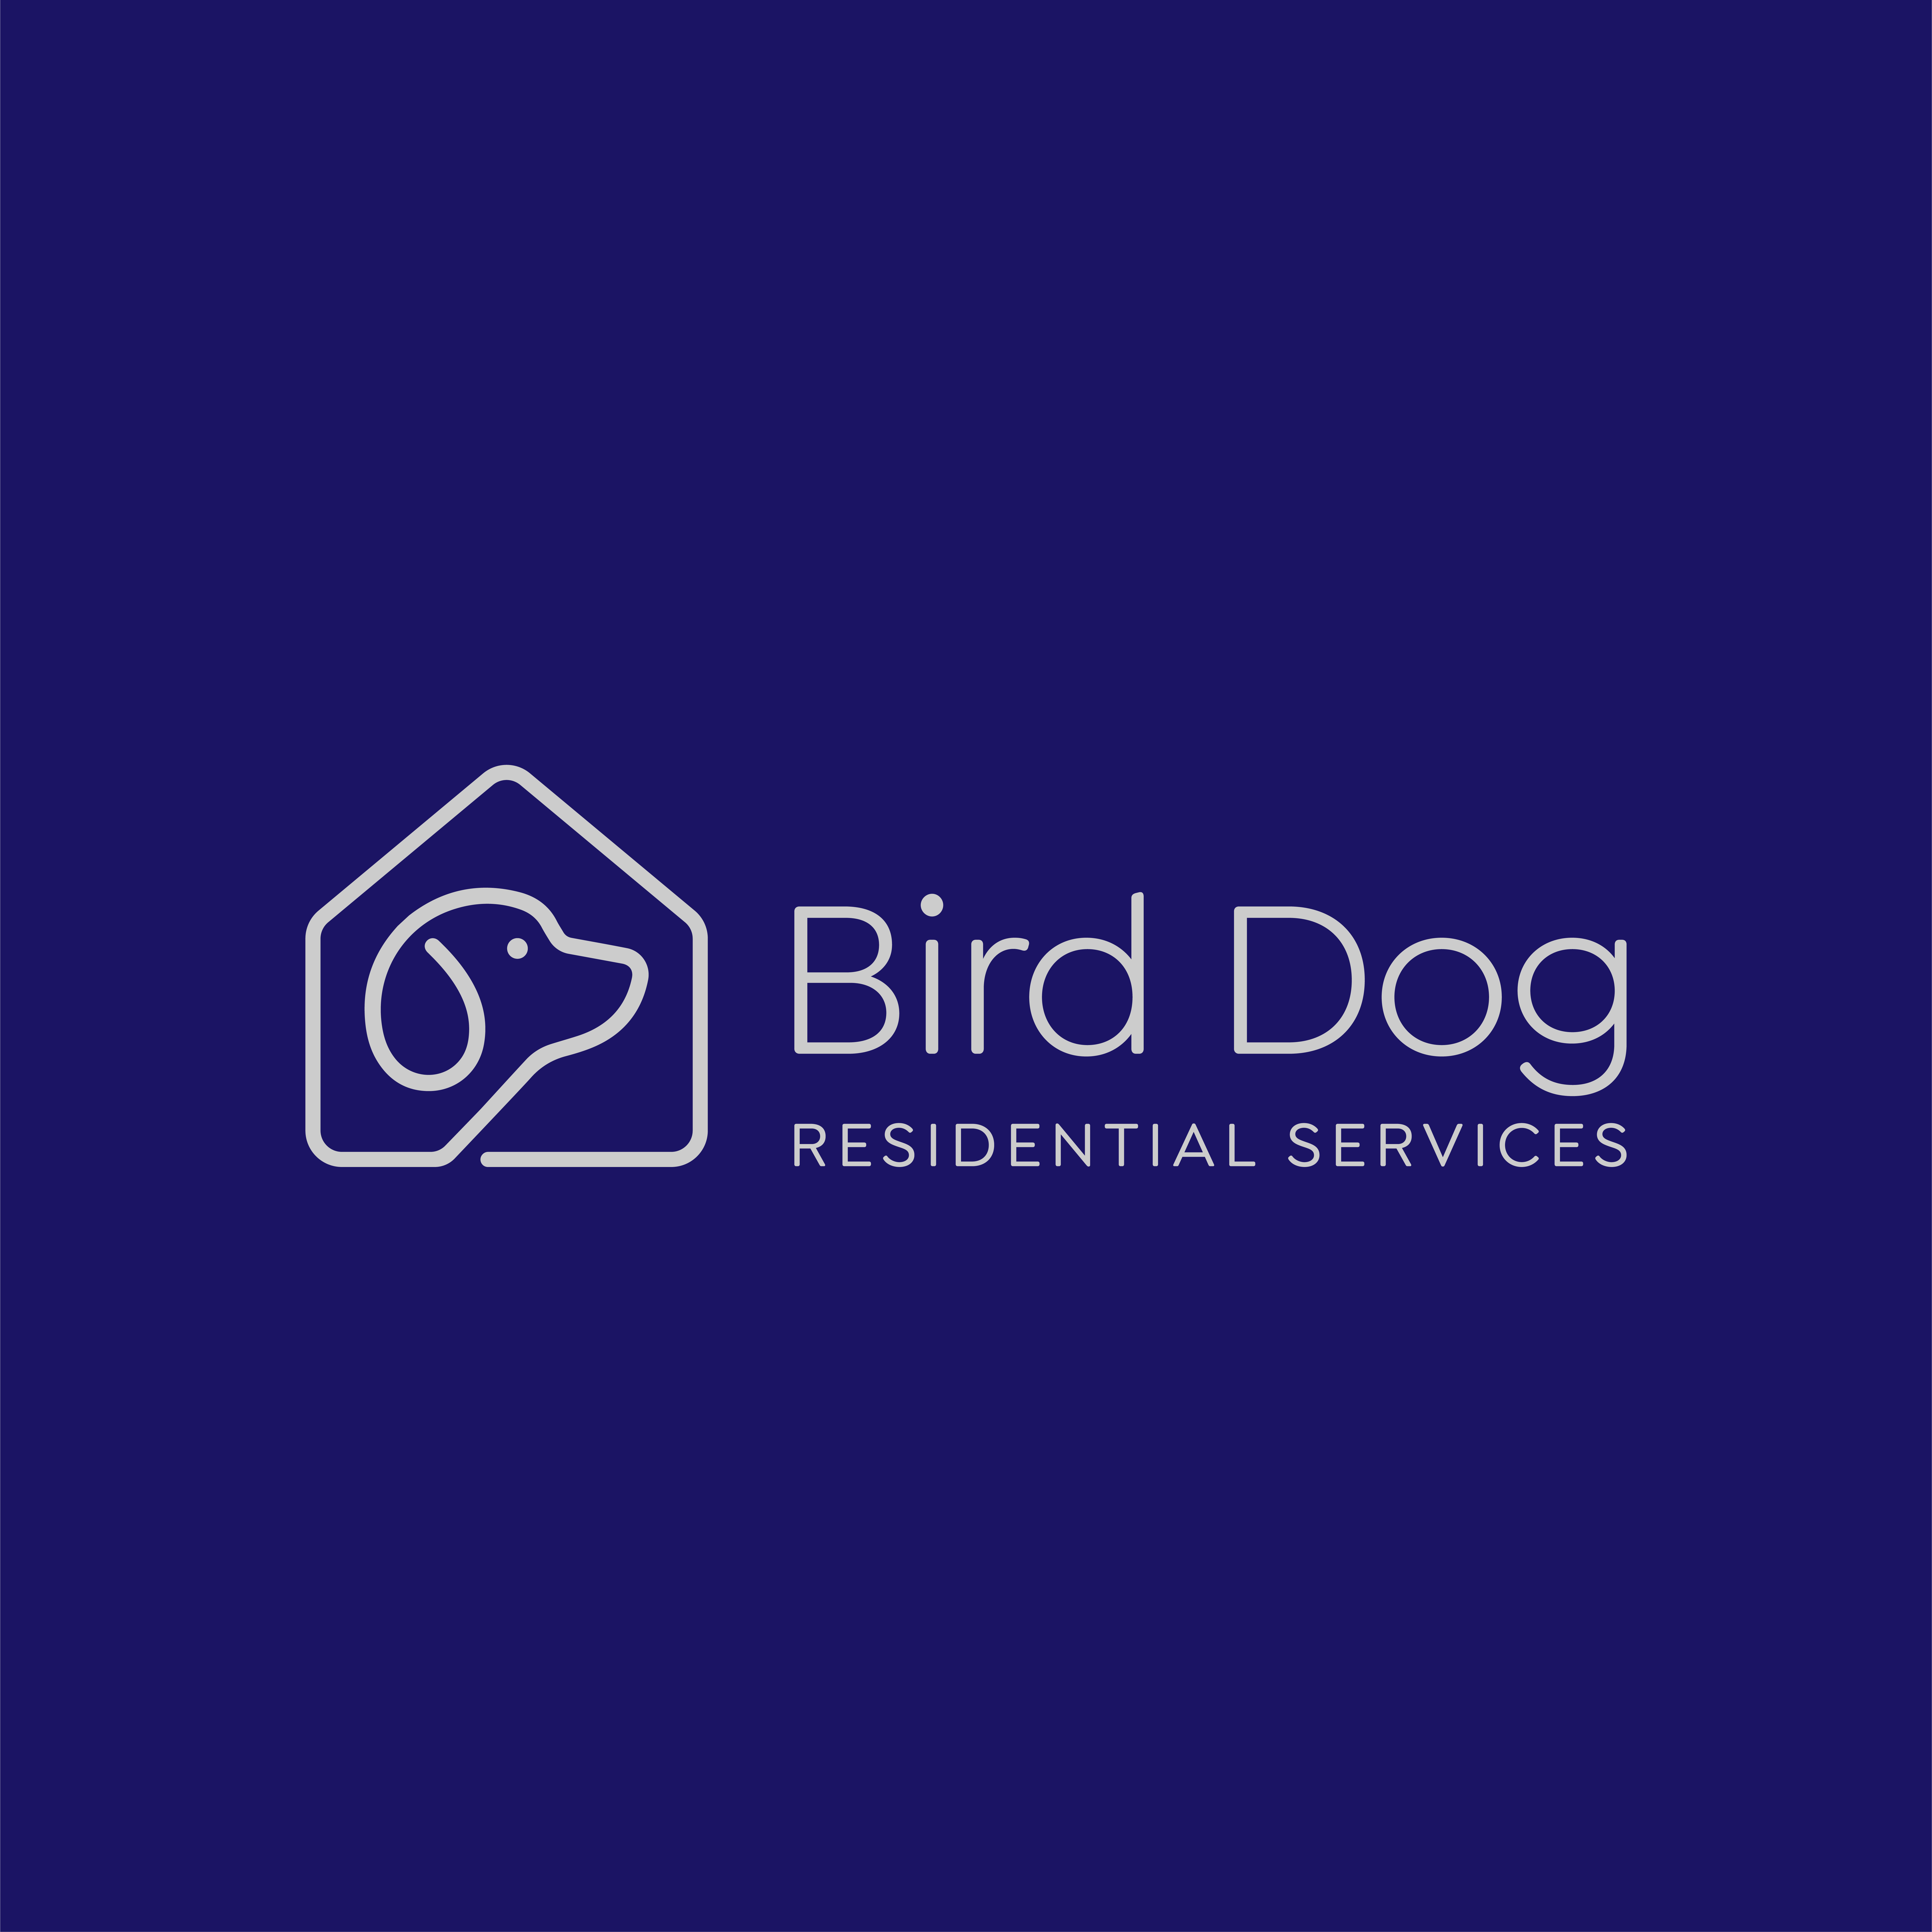 Bird Dog Residential Services Logo